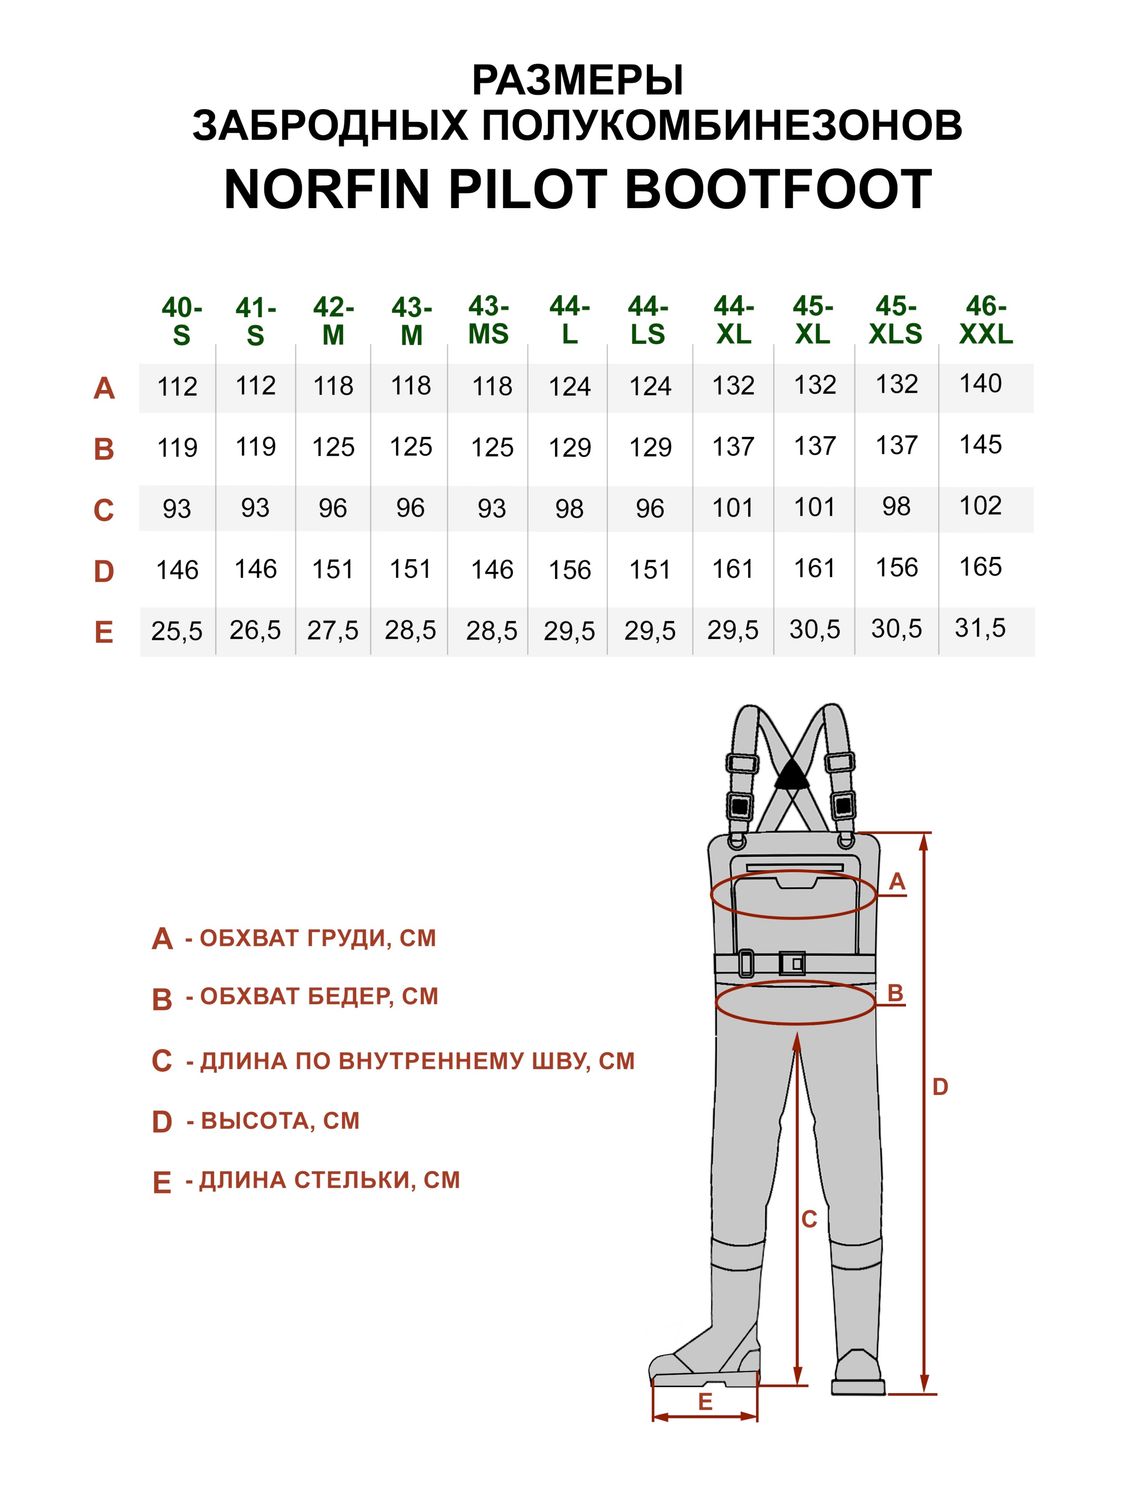 Norfin Pilot Bootfoot